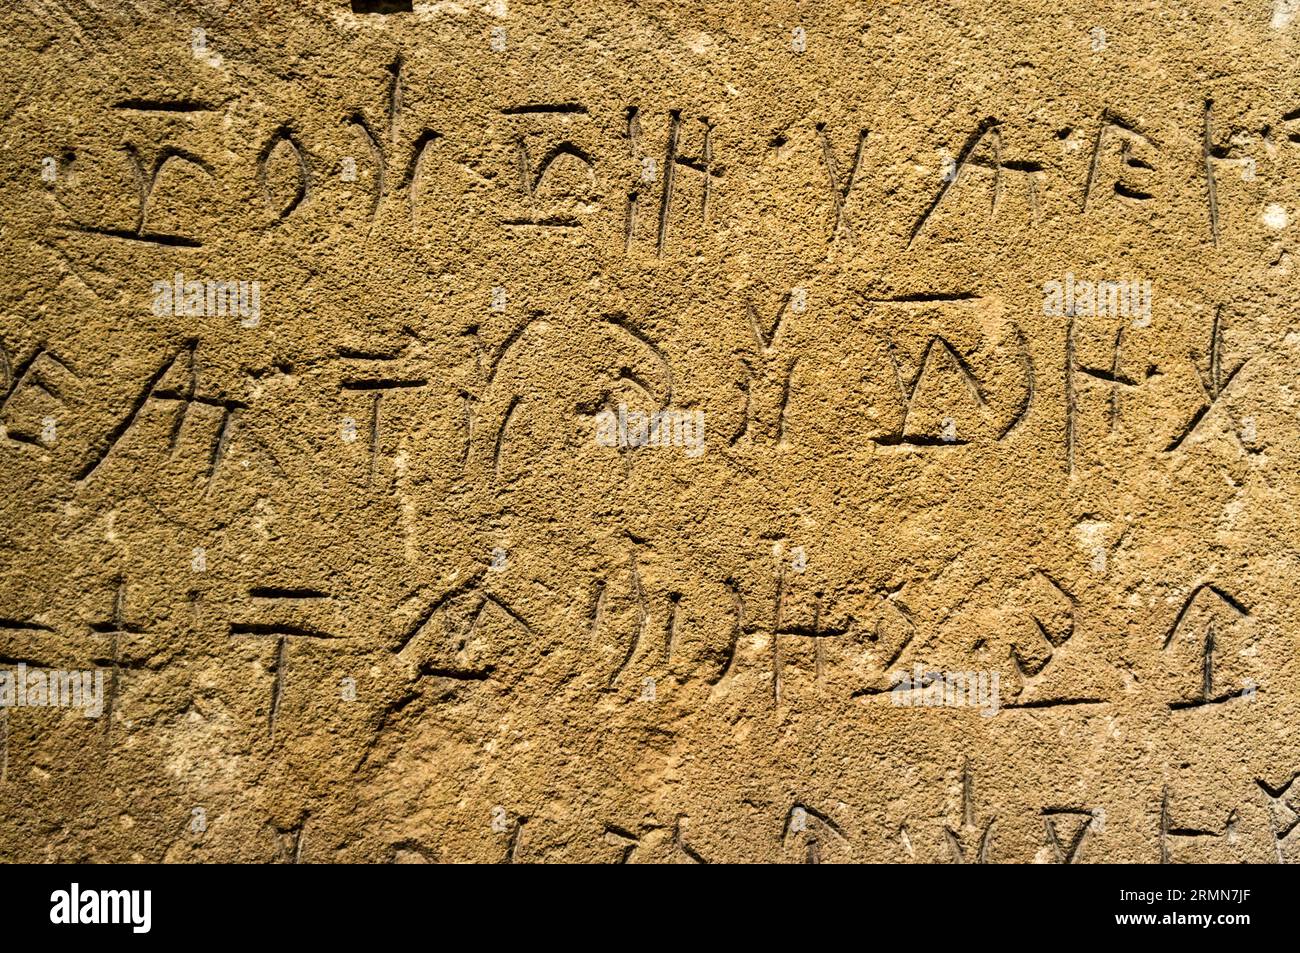 Ein Kalksteinblock, wahrscheinlich aus Amathous auf Zypern. Beschriftet mit nicht entzifferten Eteocypriot-Zeichen. 500-300 V. CHR. Ashmolean Museum, Oxford. Stockfoto